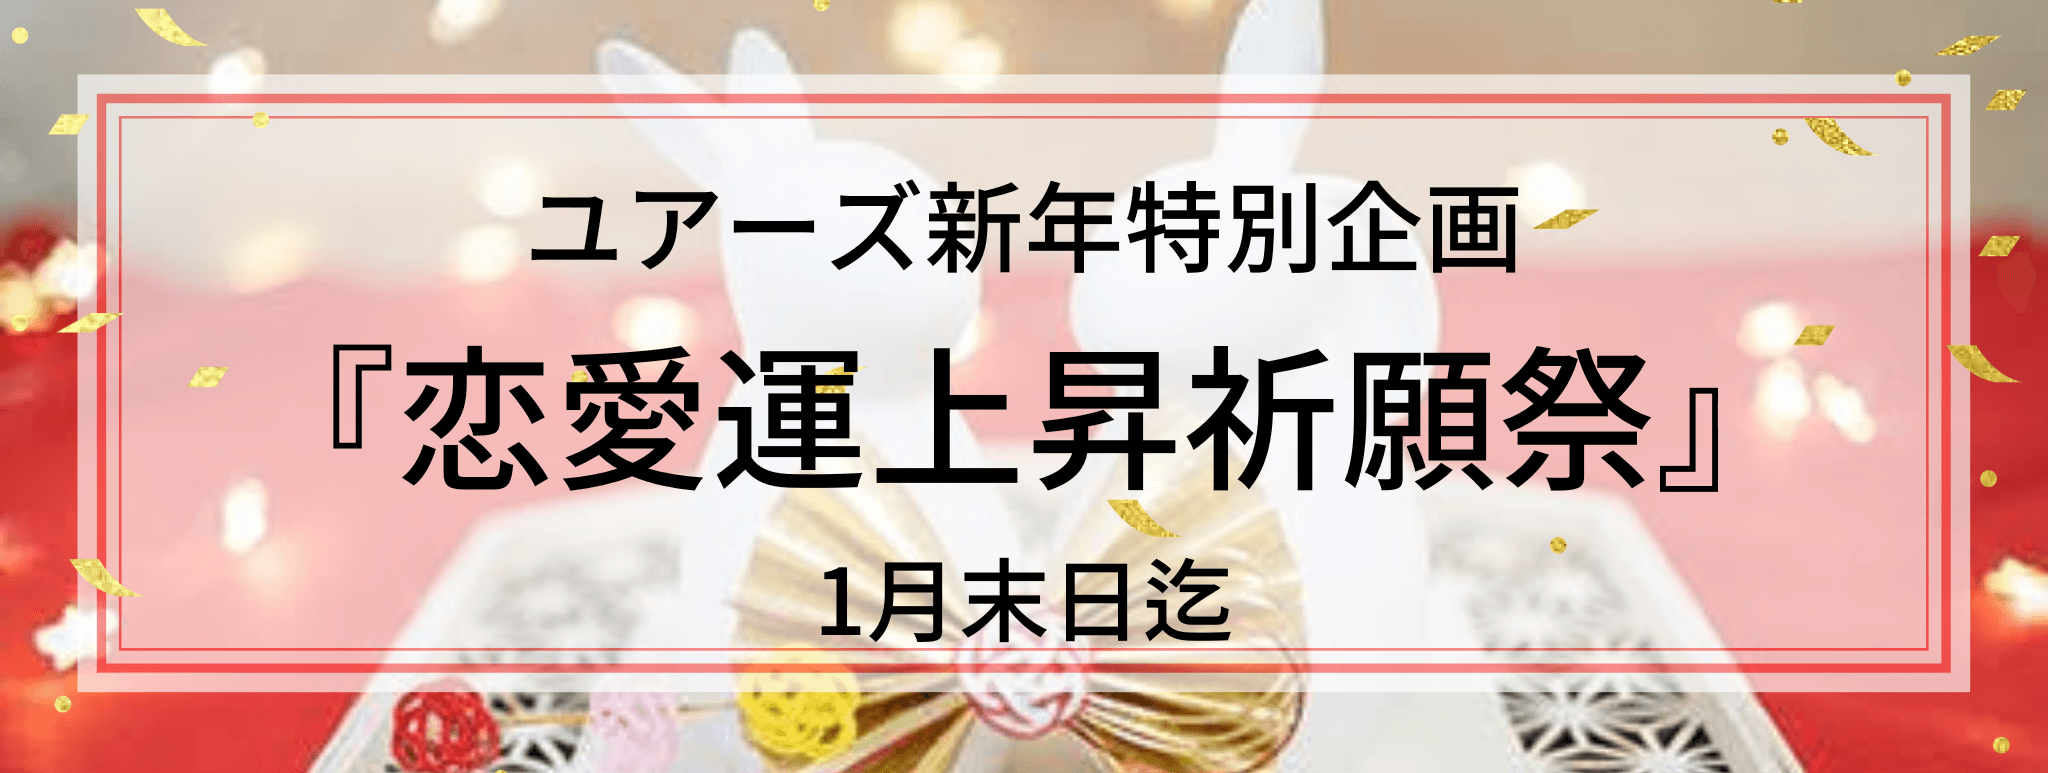 2023年新春お年玉キャンペーン『恋愛運上昇 祈願祭』